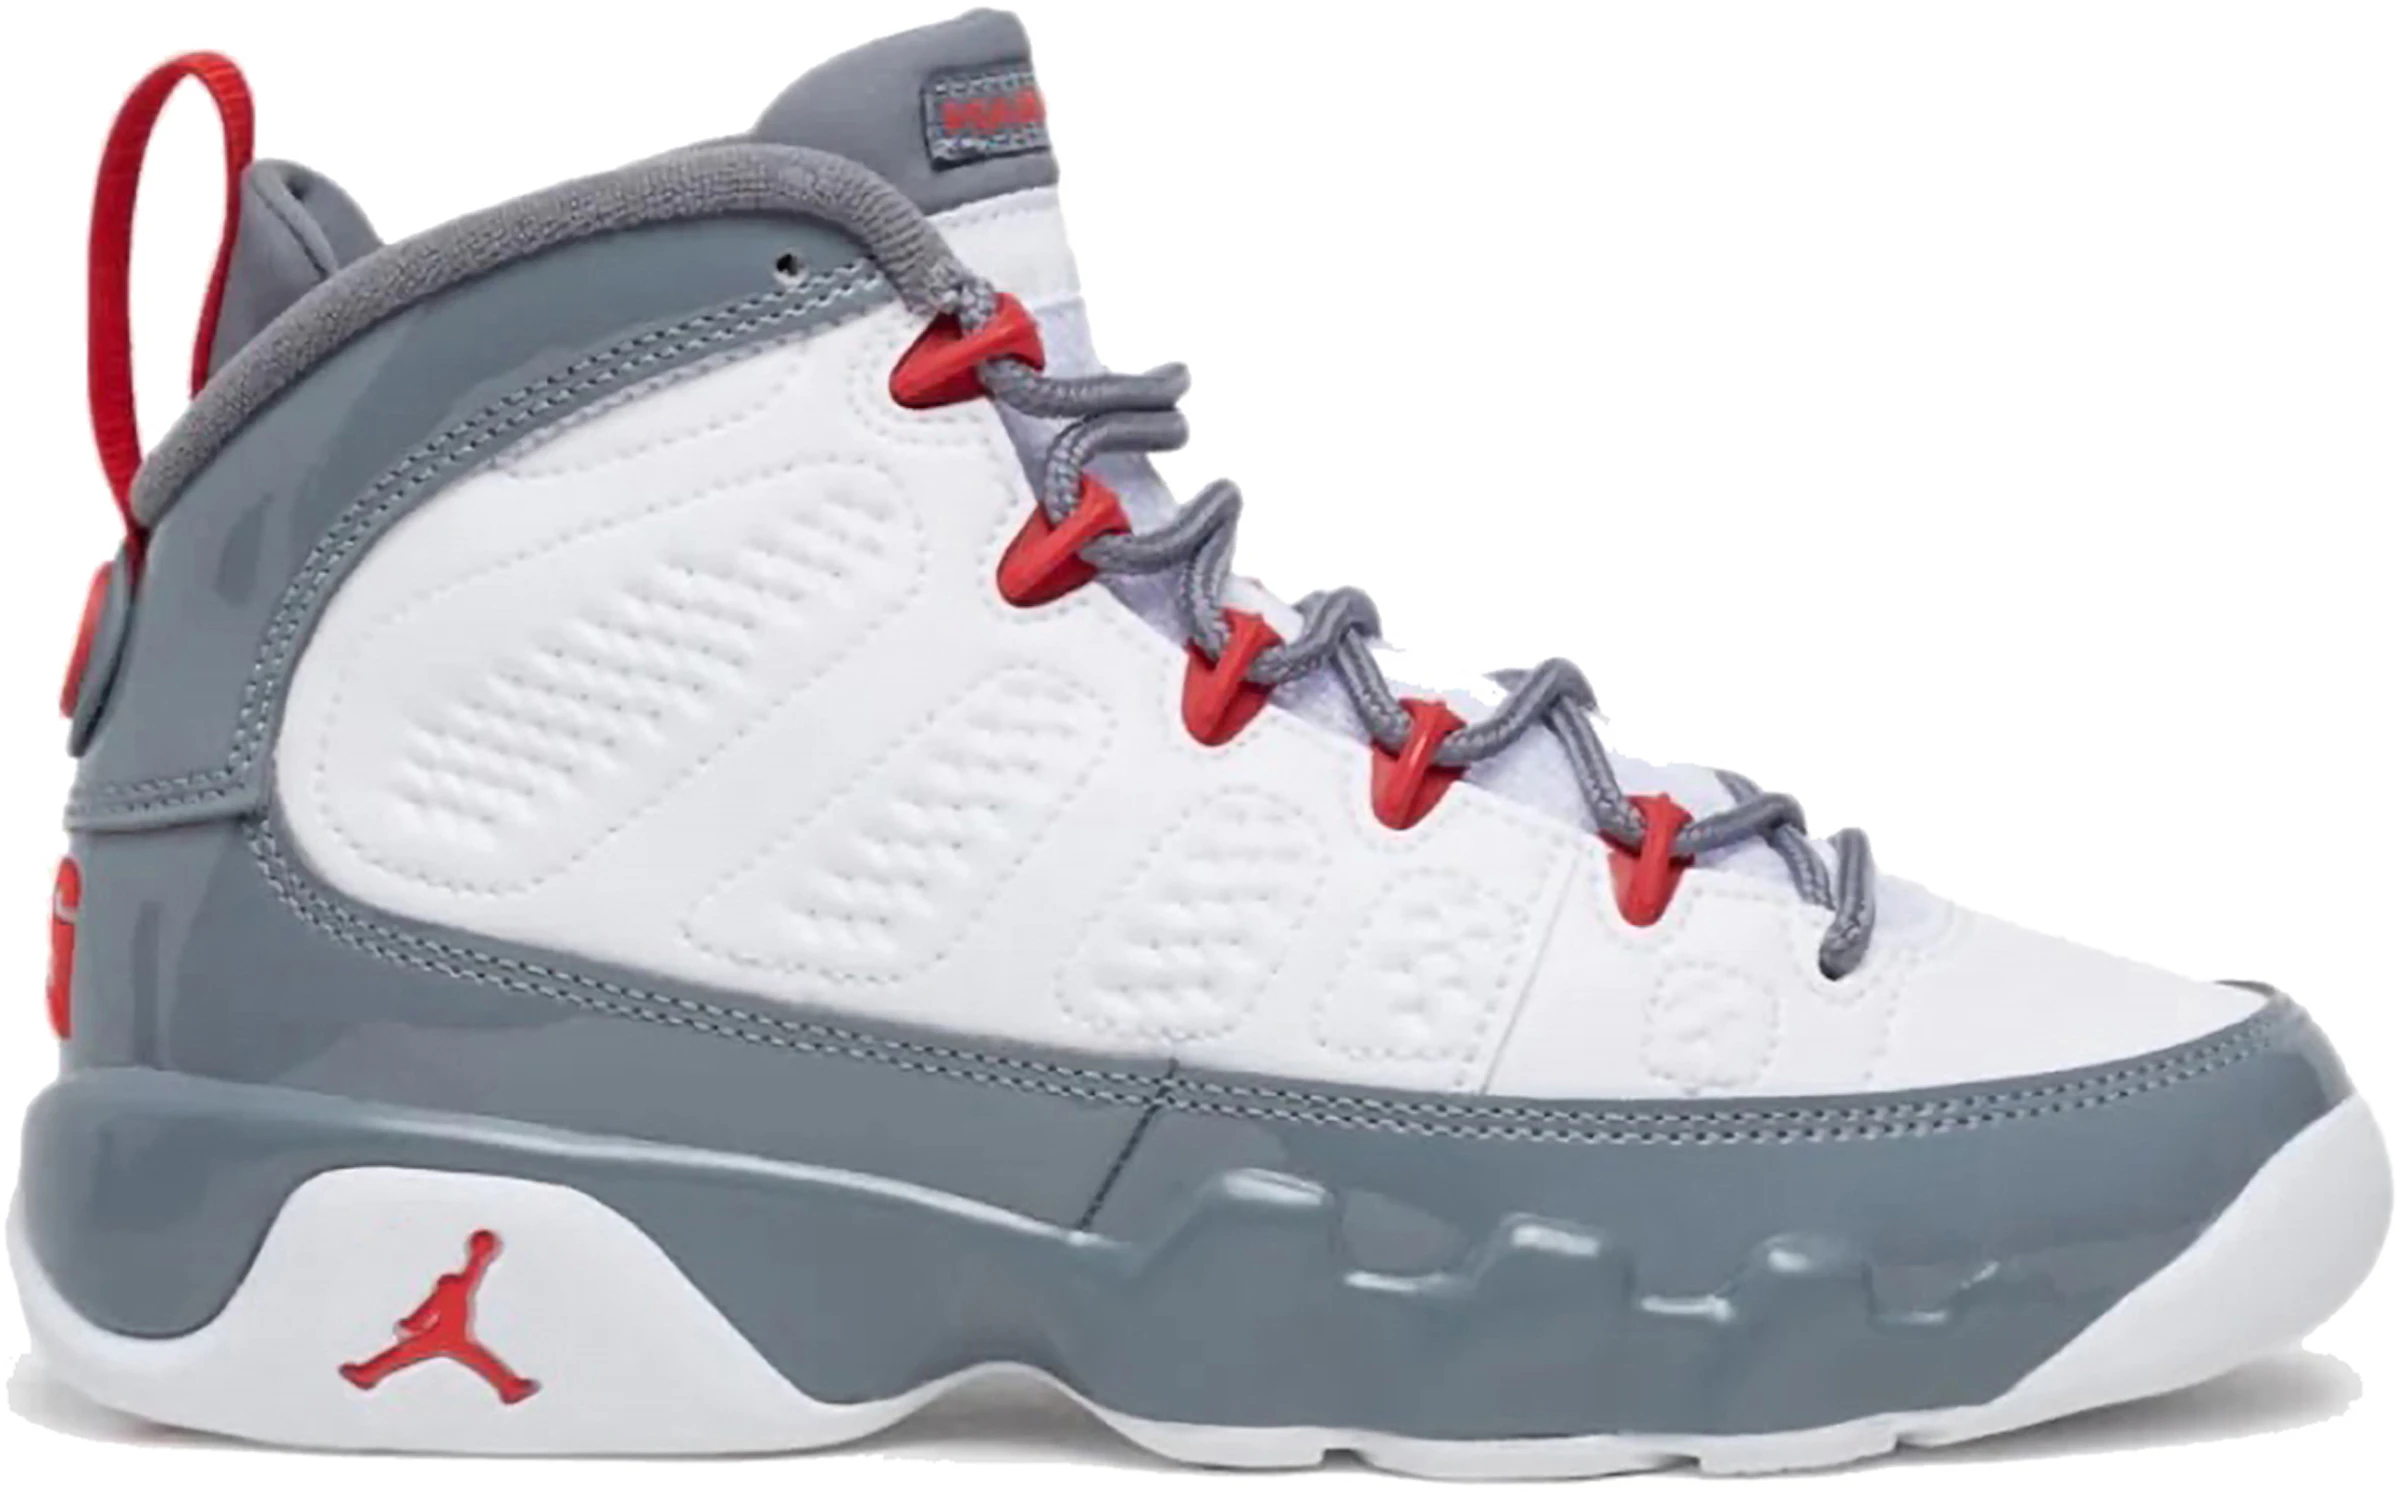 Compra Jordan 9 Calzado y sneakers nuevos - StockX